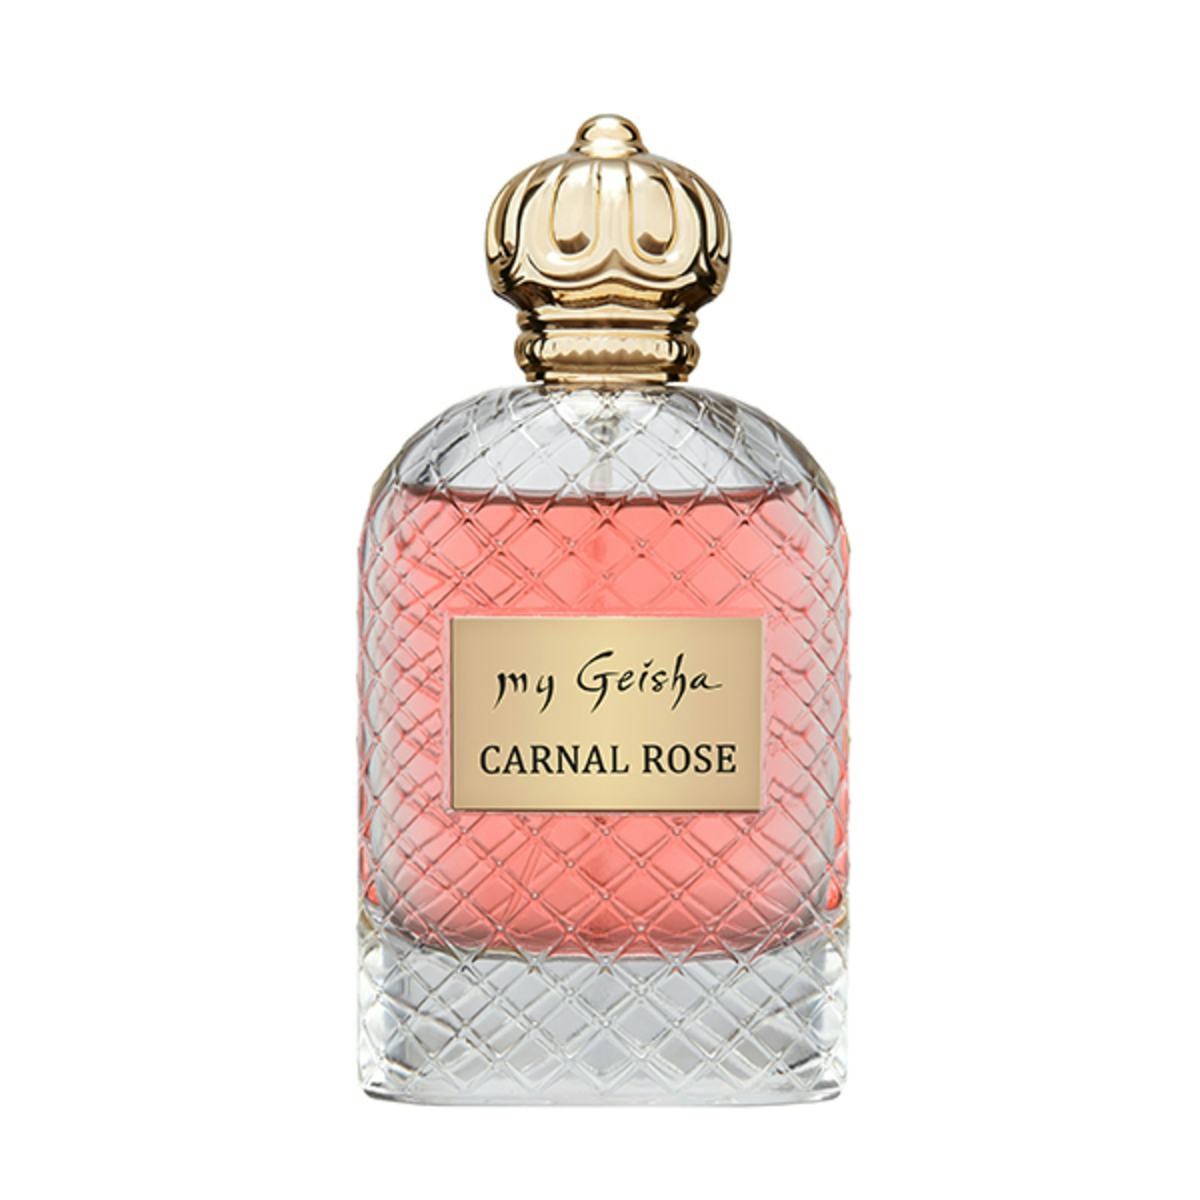 Extrait de parfum Carnal Rose 100ml, My Geisha Genève, Genève, image 1 | Mimelis